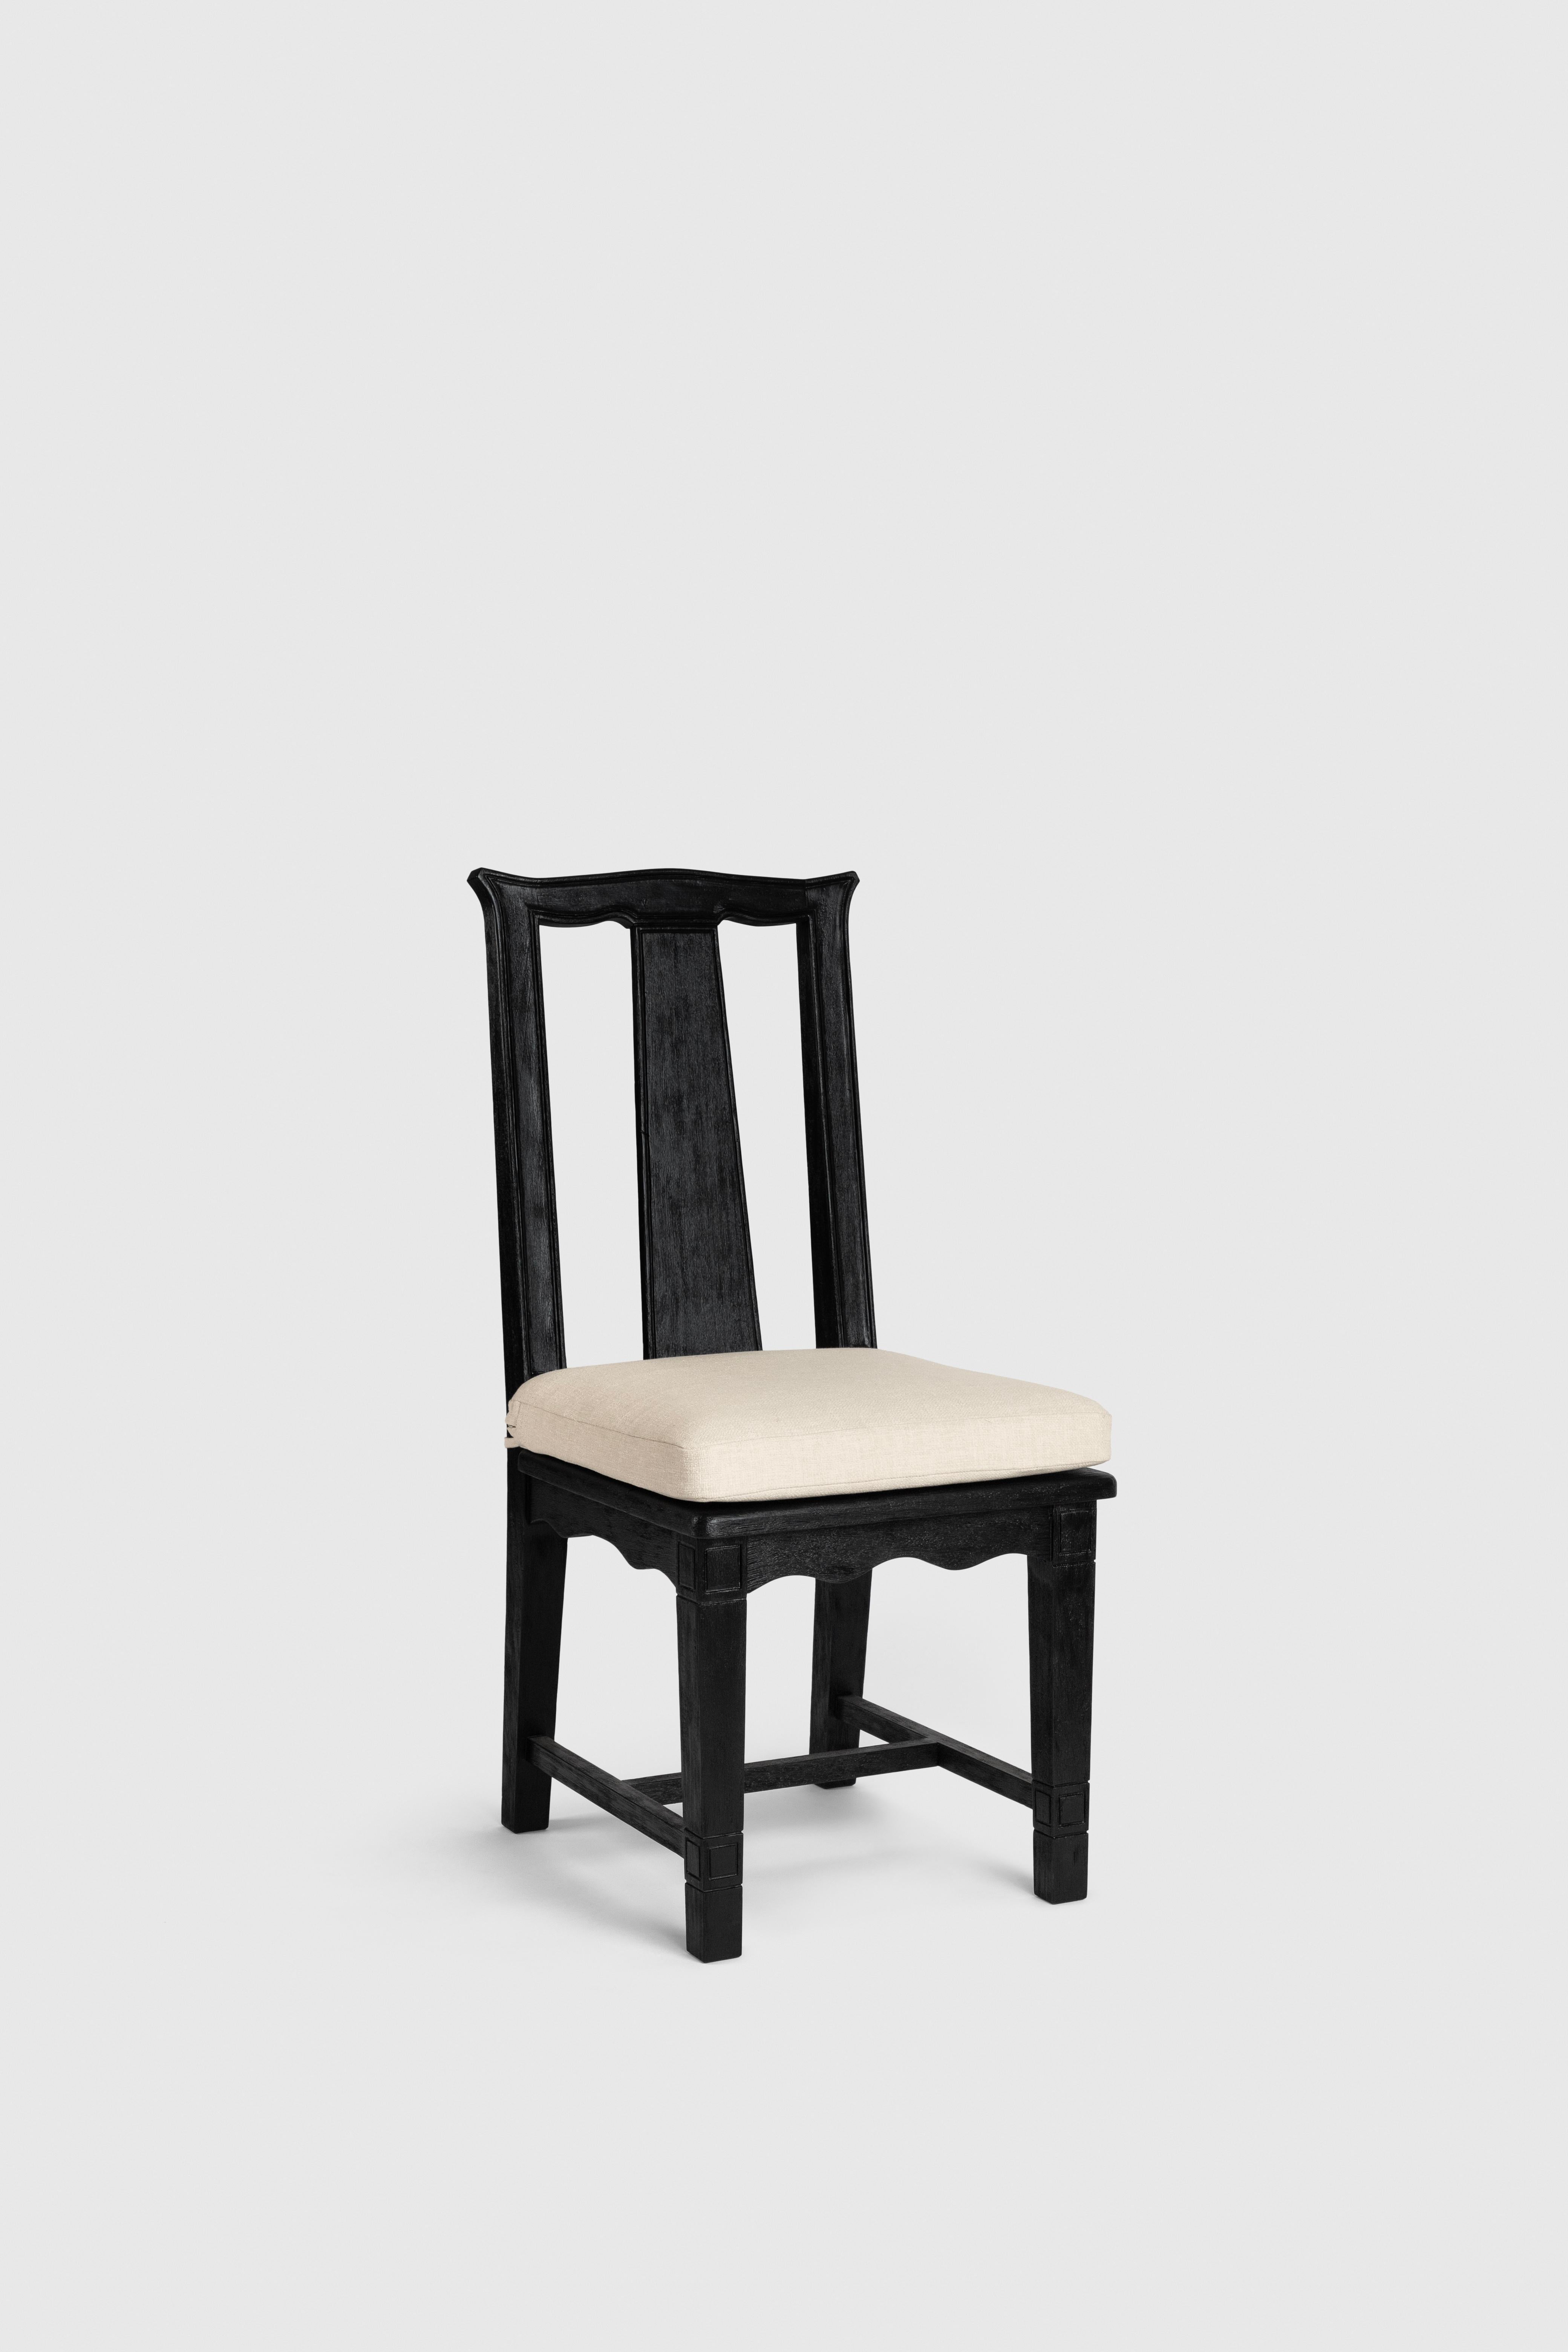 La chaise Han a été conçue par Fernanda Loyzaga. 

Chez Loyzaga Design/One, nous avons toujours été fascinés par la relation entre l'Asie et le Mexique par le Manila Galeon qui allait des Philippines au port d'Acapulco. Cette chaise est une